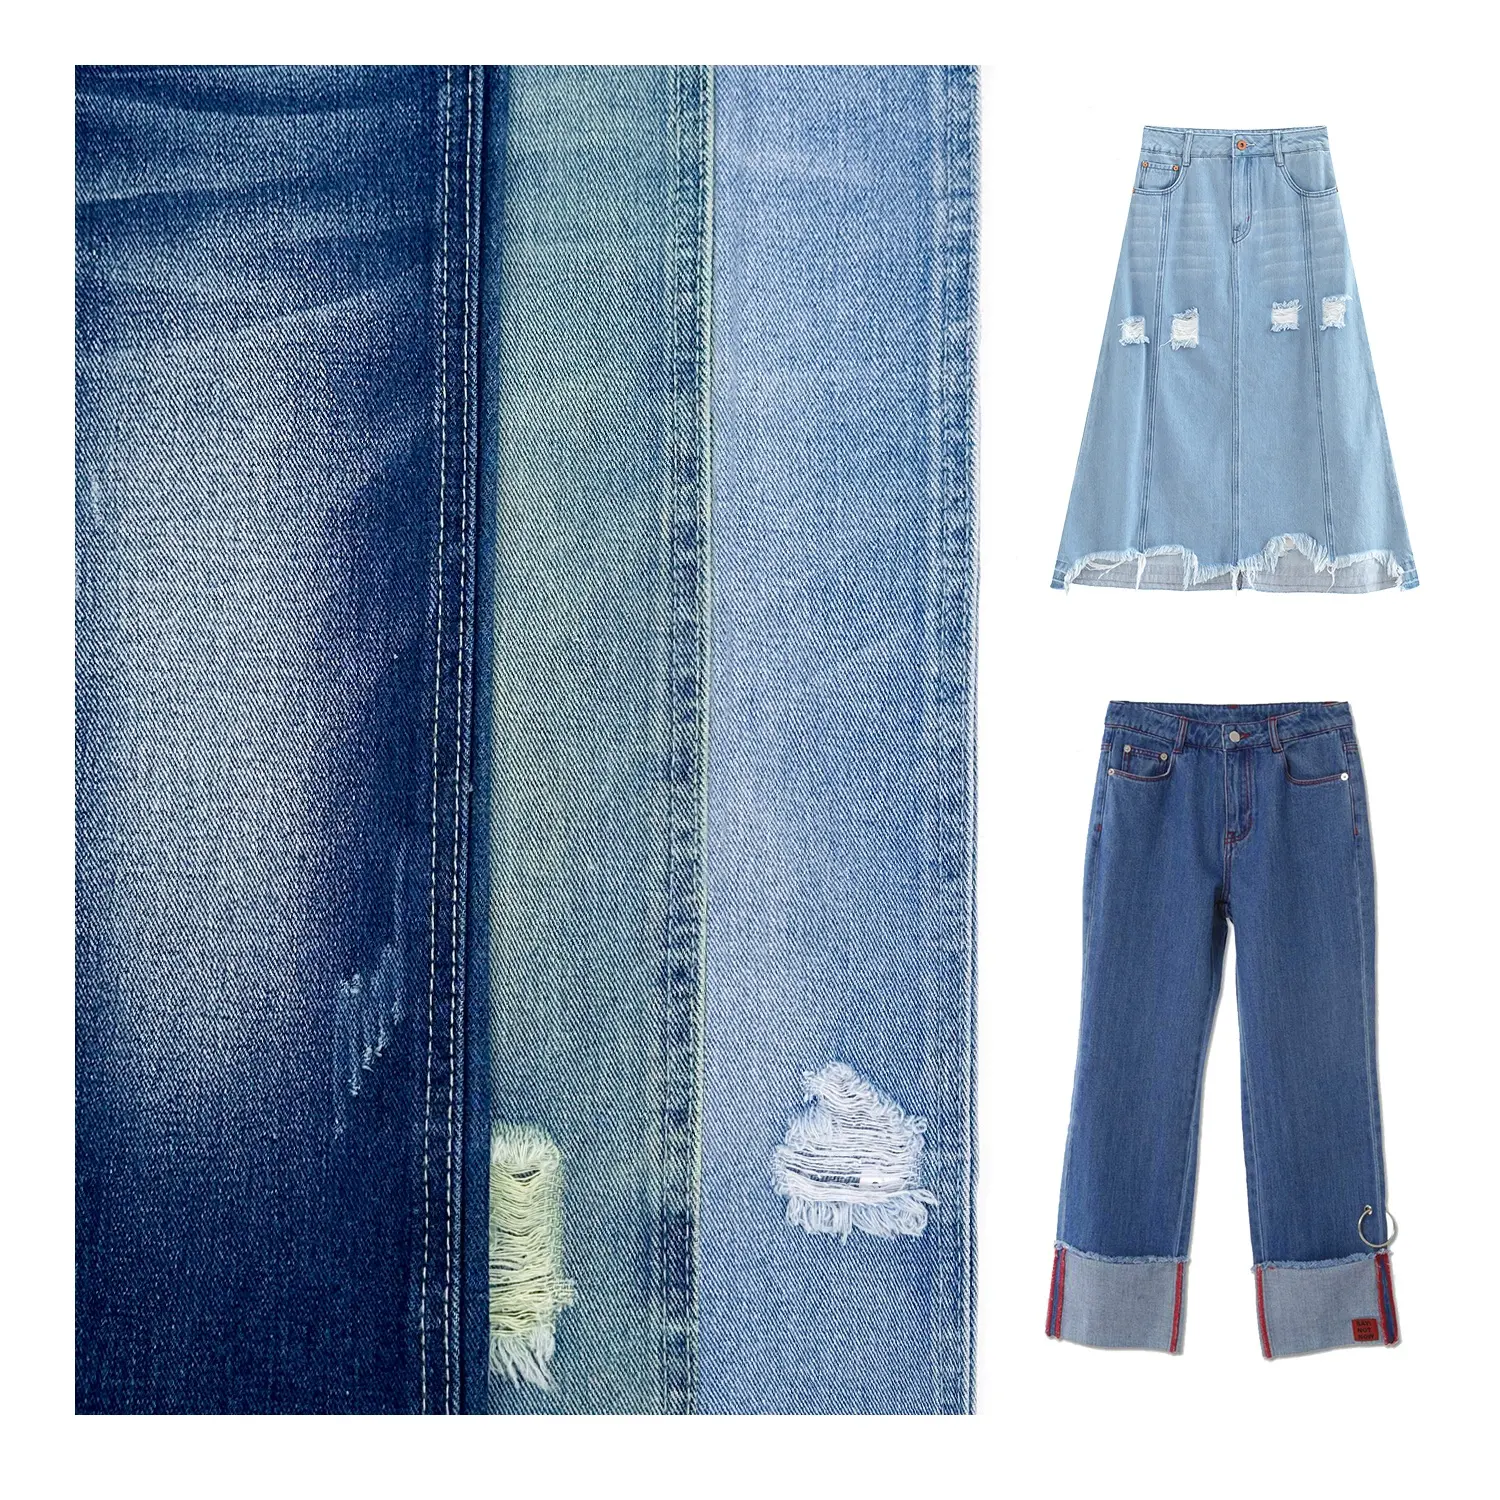 Stock 12oz de tissu jeans épais tissu jeans fil modal tissu vintage tissu denim tricoté sergé pour vêtements de créateurs avec vente en gros